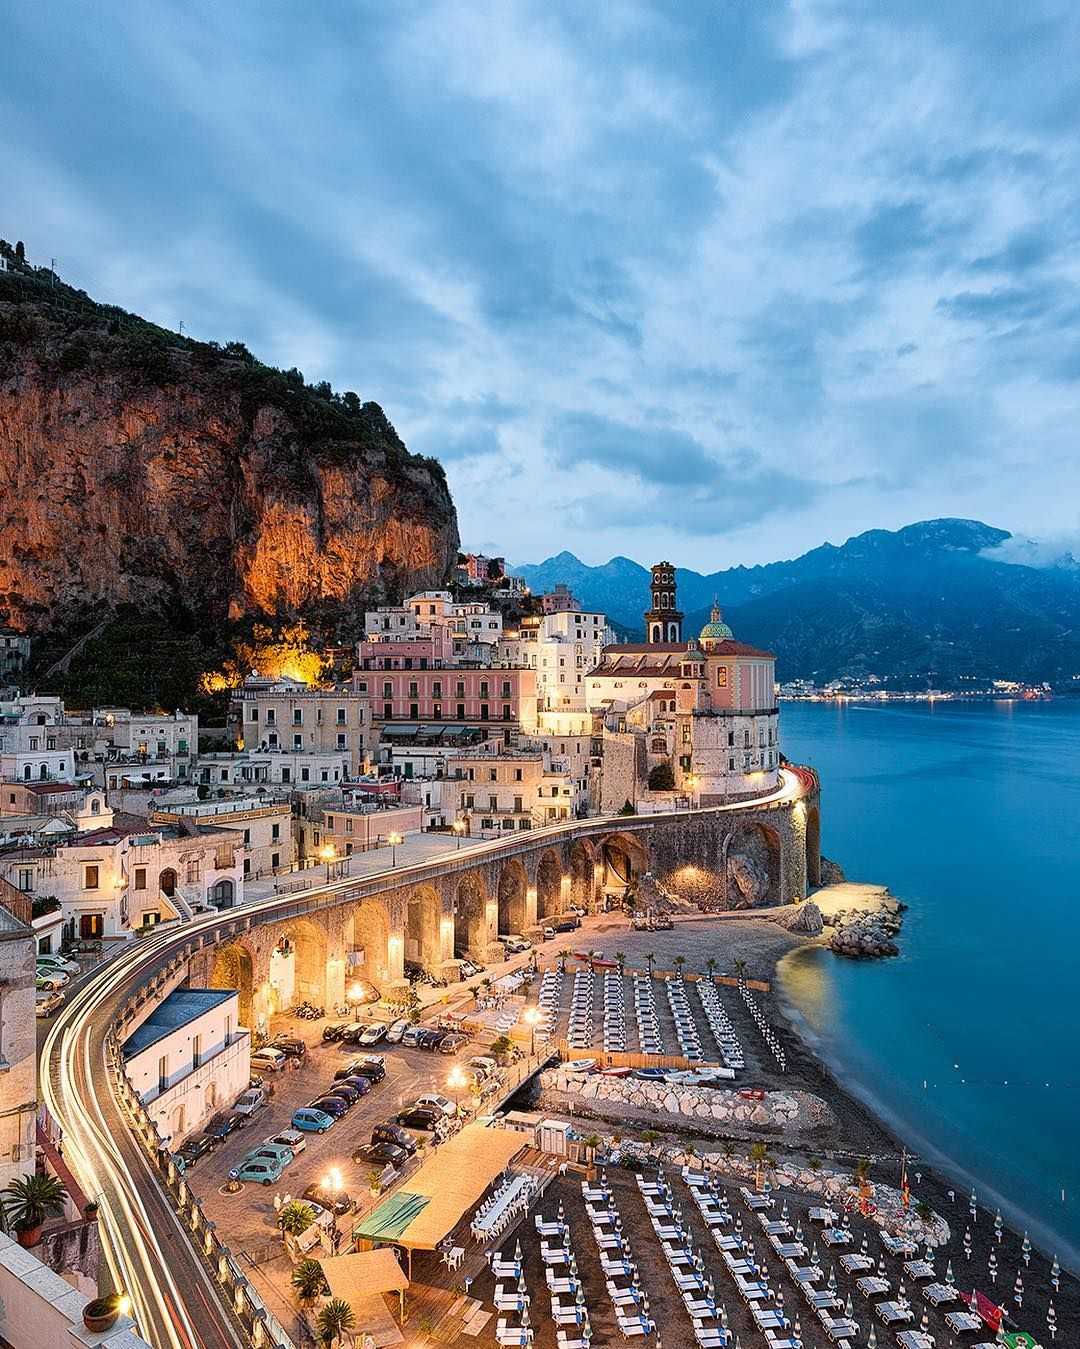 Amalfi coast. Побережье Амальфи Италия. Амальфийское побережье (Amalfi Coast), Италия. Атрани побережье Амальфи. Атрани, Амальфитанское побережье, Италия.